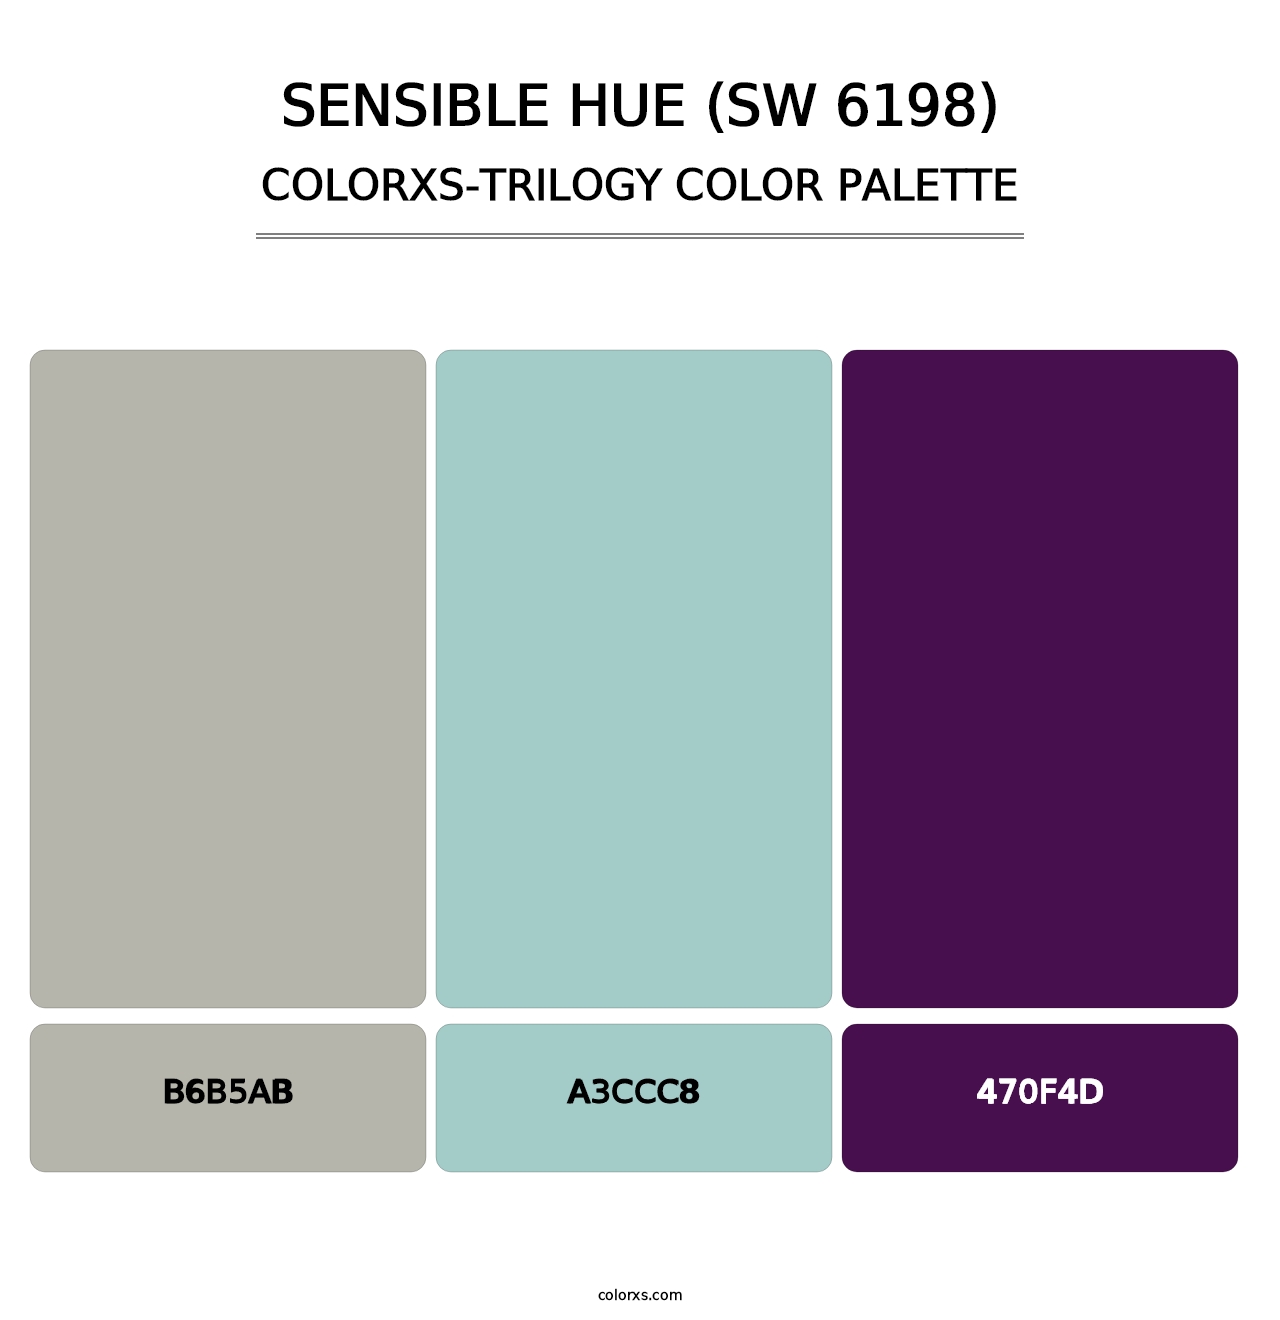 Sensible Hue (SW 6198) - Colorxs Trilogy Palette